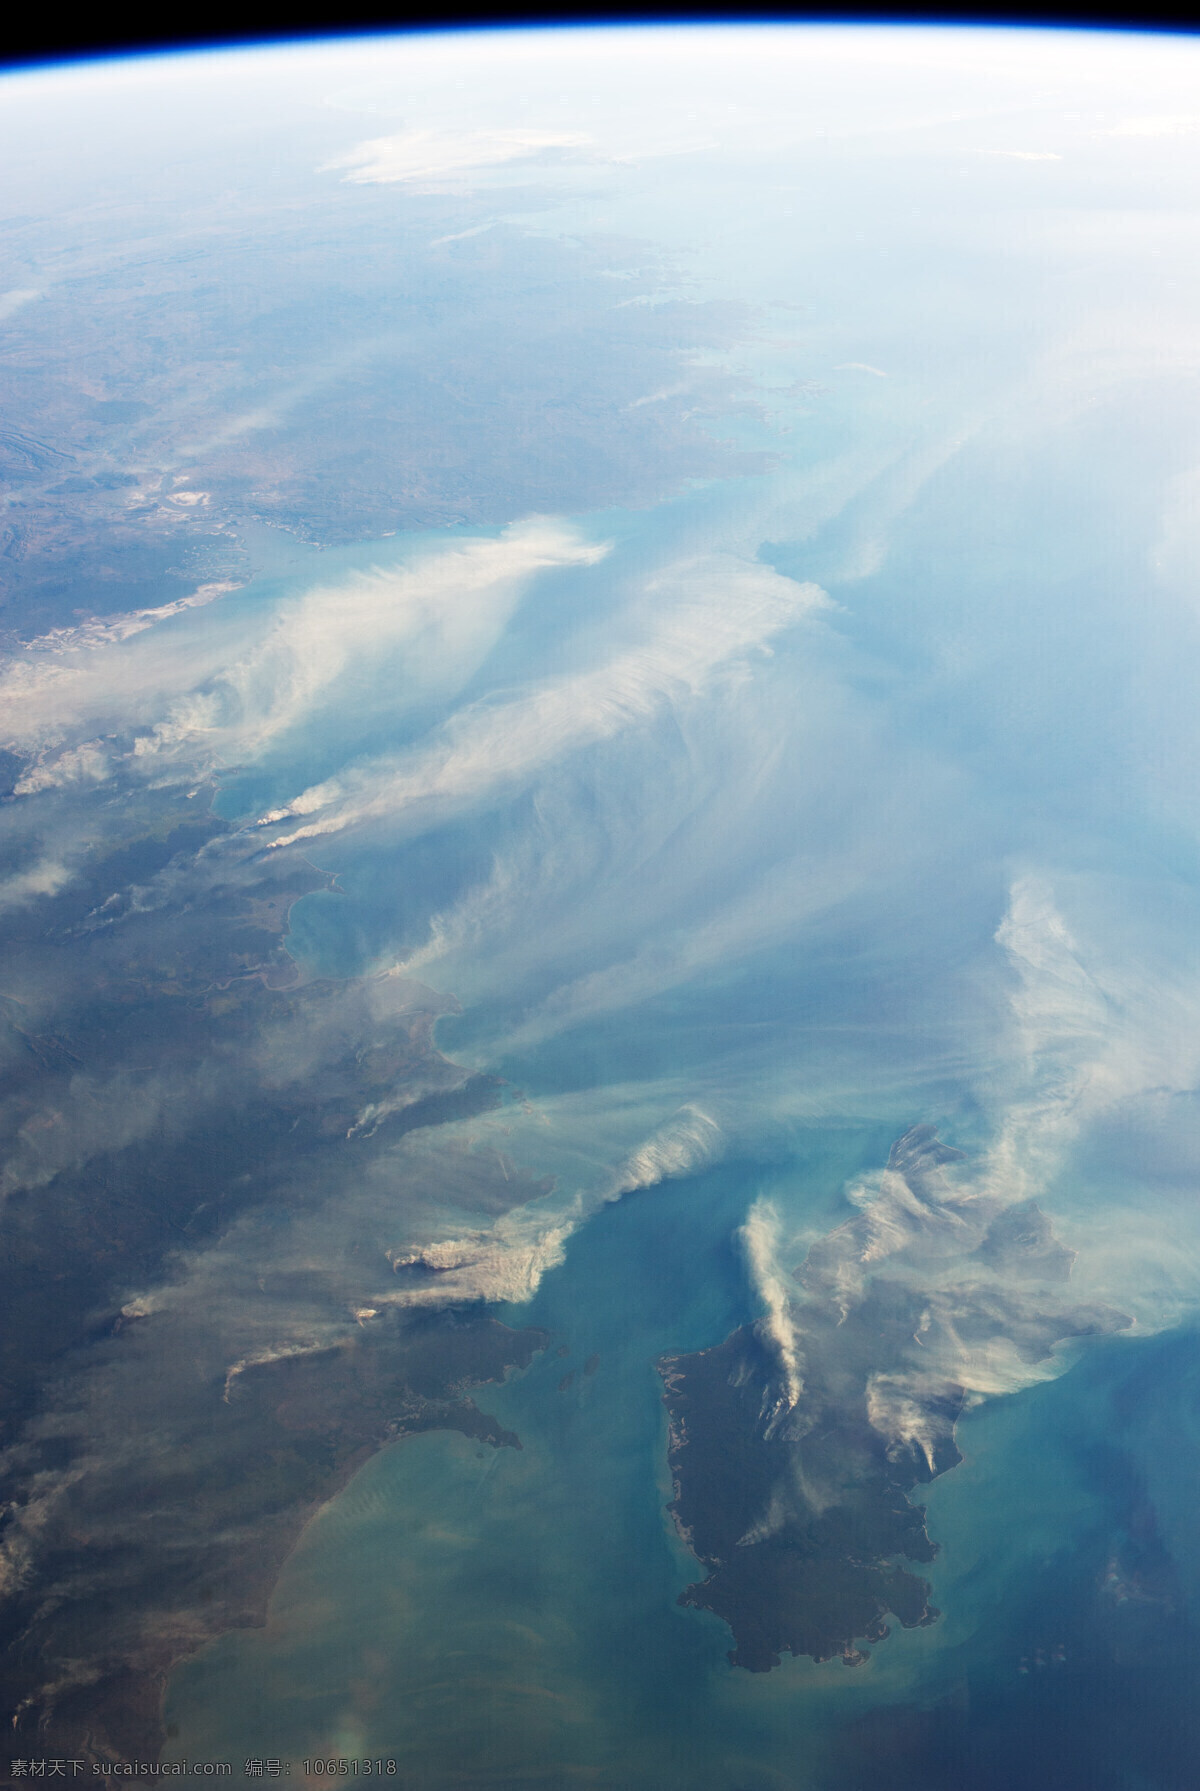 澳大利亚 达尔文 火灾 nasa 美国太空总署 地图 地理 卫星照片 卫星拍摄 卫星地图 遥感 卫星影像 三维地图 卫星云图 谷歌地图 自然景观